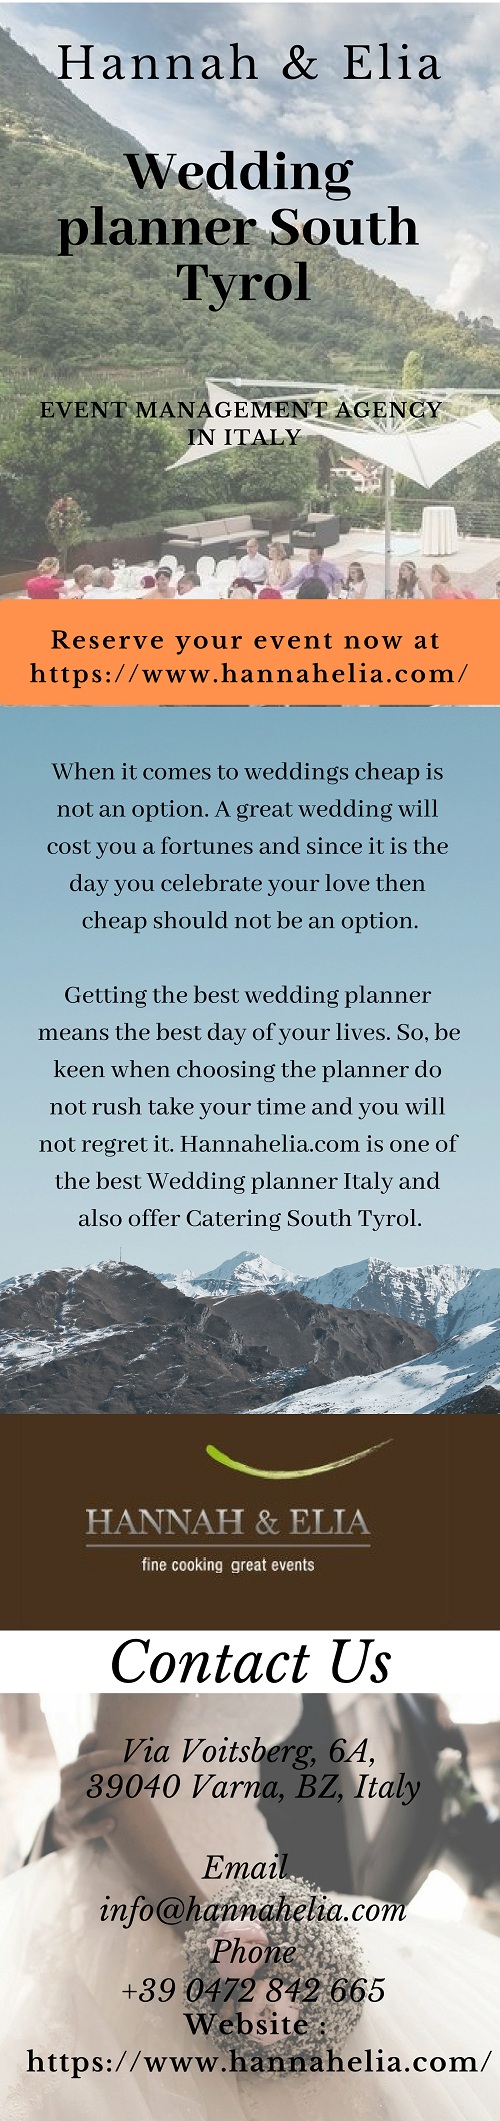 Wedding planner South Tyrol.jpg  by hannahelia